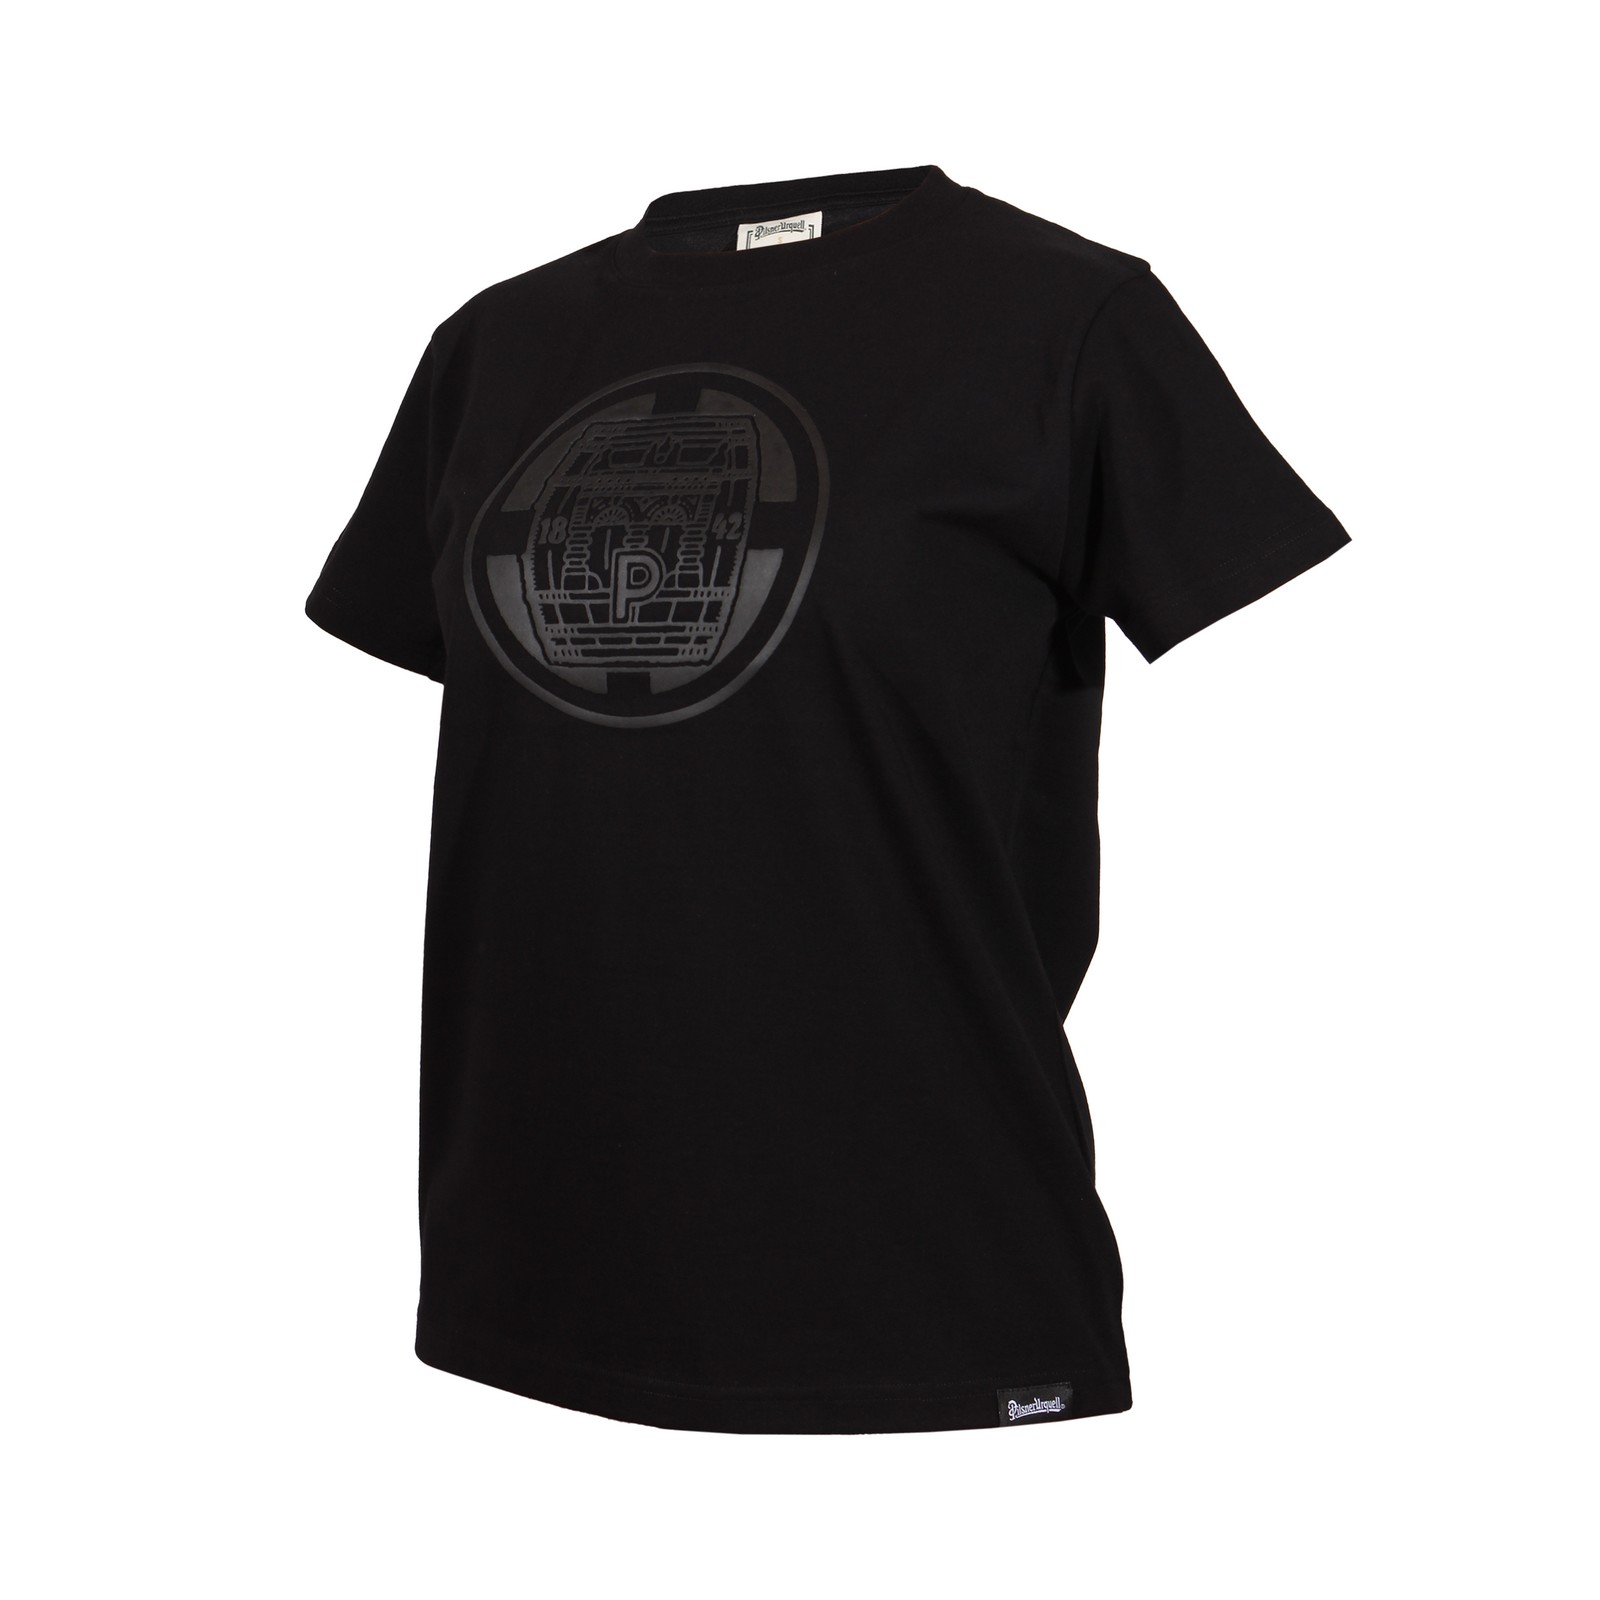 Women's T-shirt Pilsner Urquell barrel black